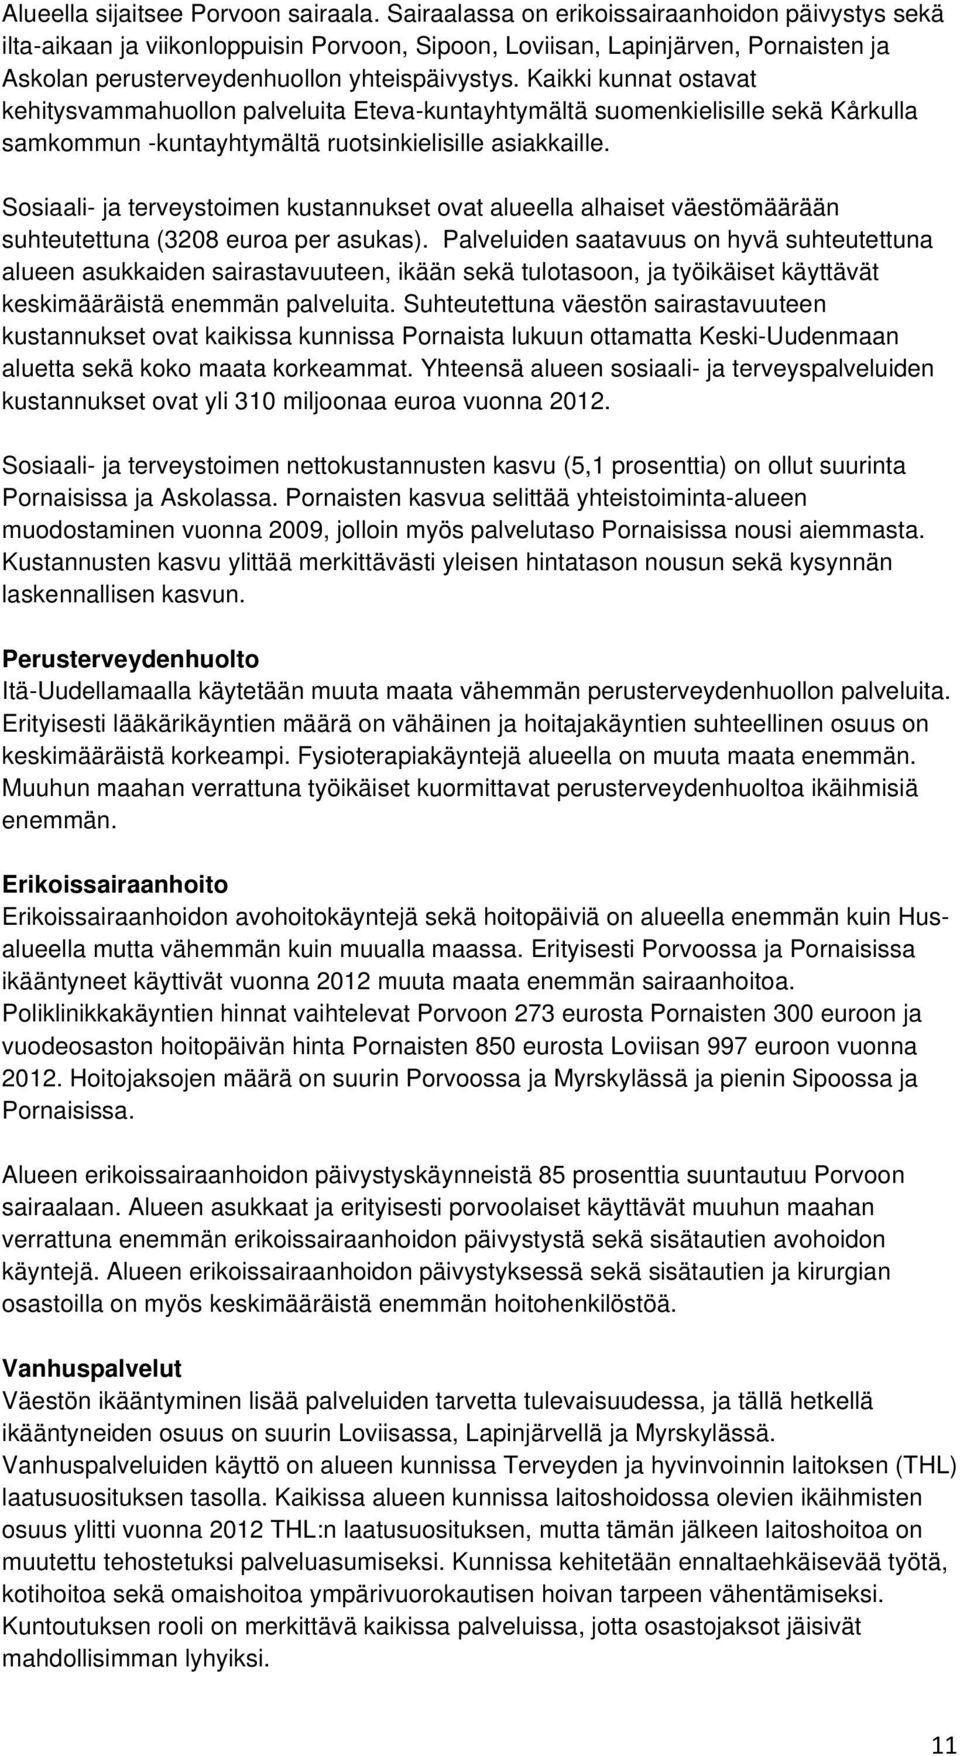 Kaikki kunnat ostavat kehitysvammahuollon palveluita Eteva-kuntayhtymältä suomenkielisille sekä Kårkulla samkommun -kuntayhtymältä ruotsinkielisille asiakkaille.